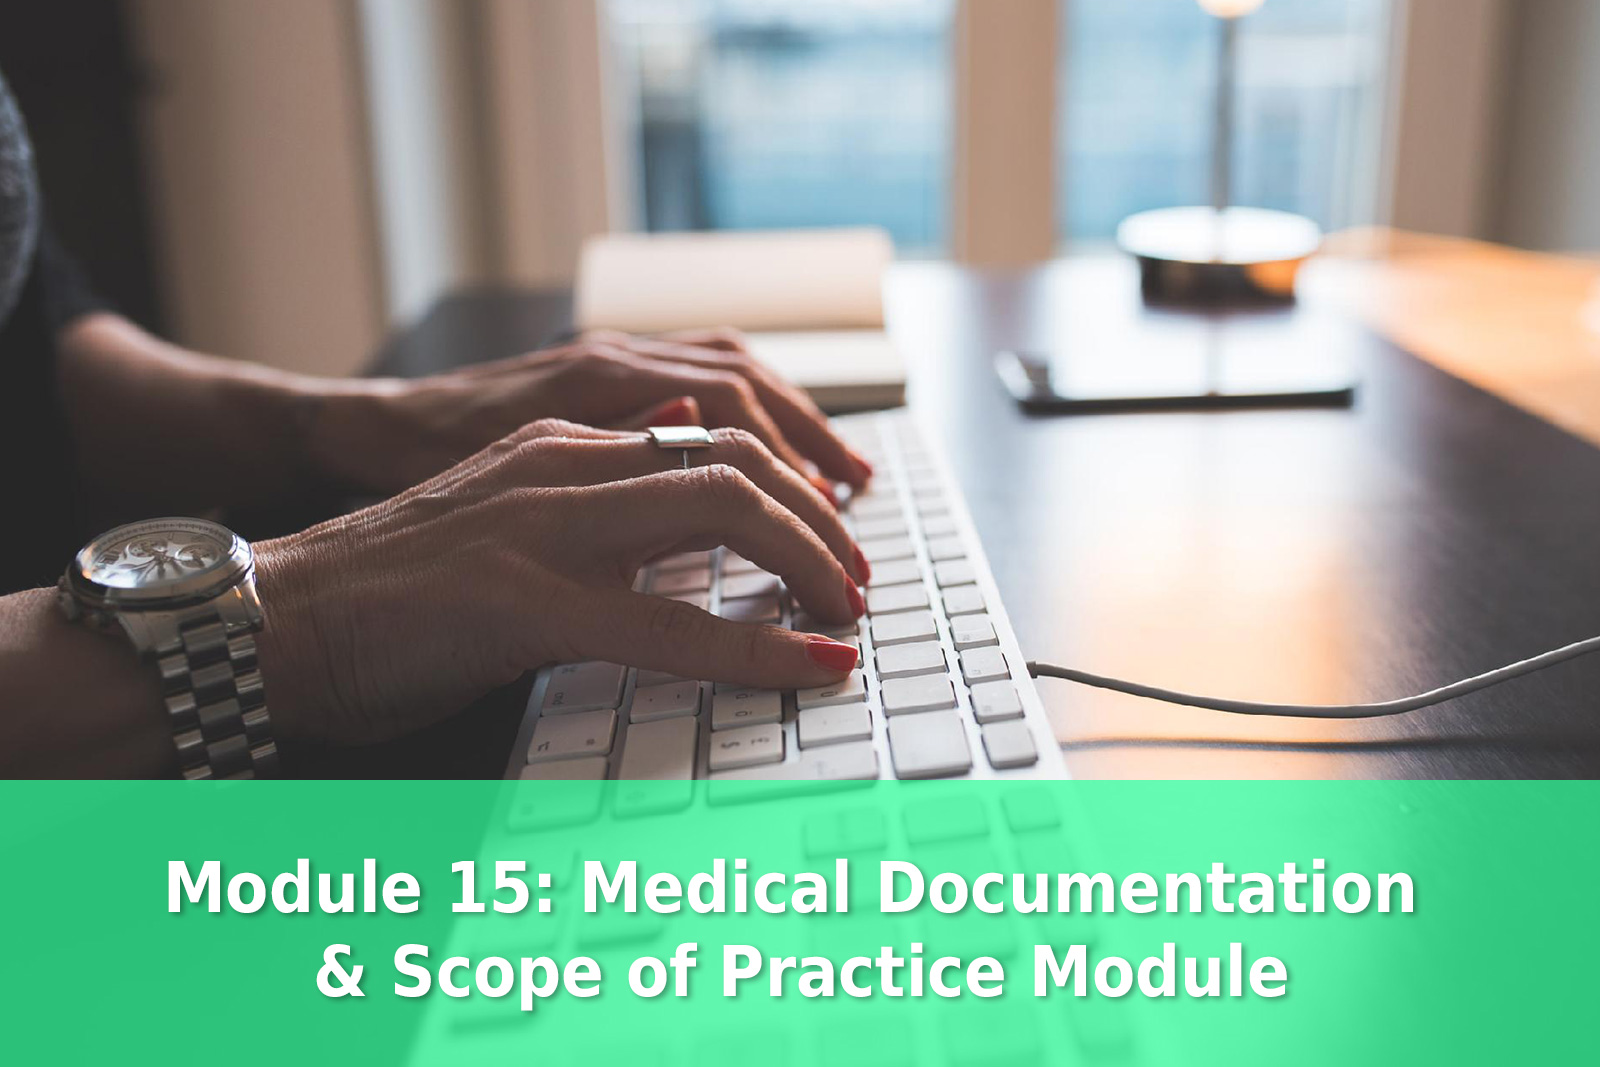 Module 15: Medical Documentation & Scope of Practice Module